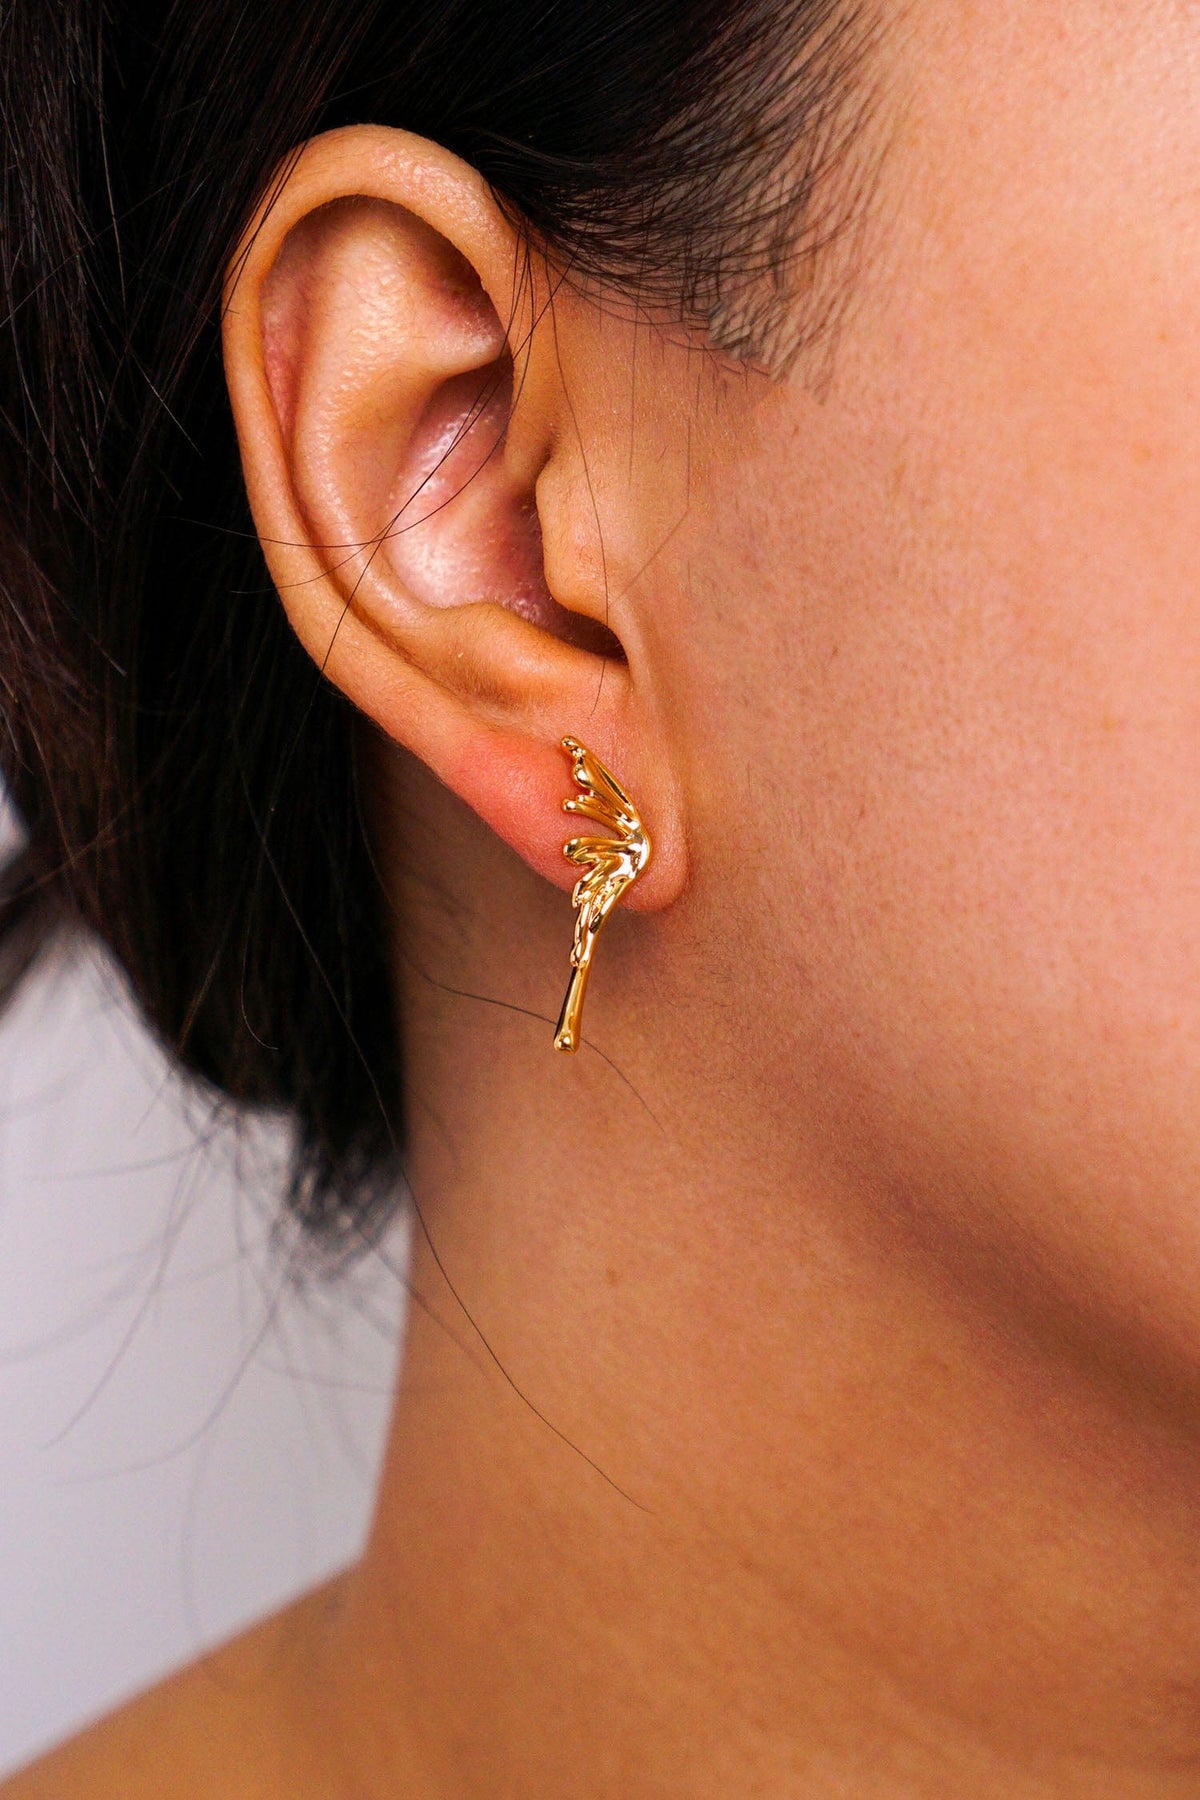 DCD EARRINGS Gold Asymmetric Butterfly Wings Stud Earrings